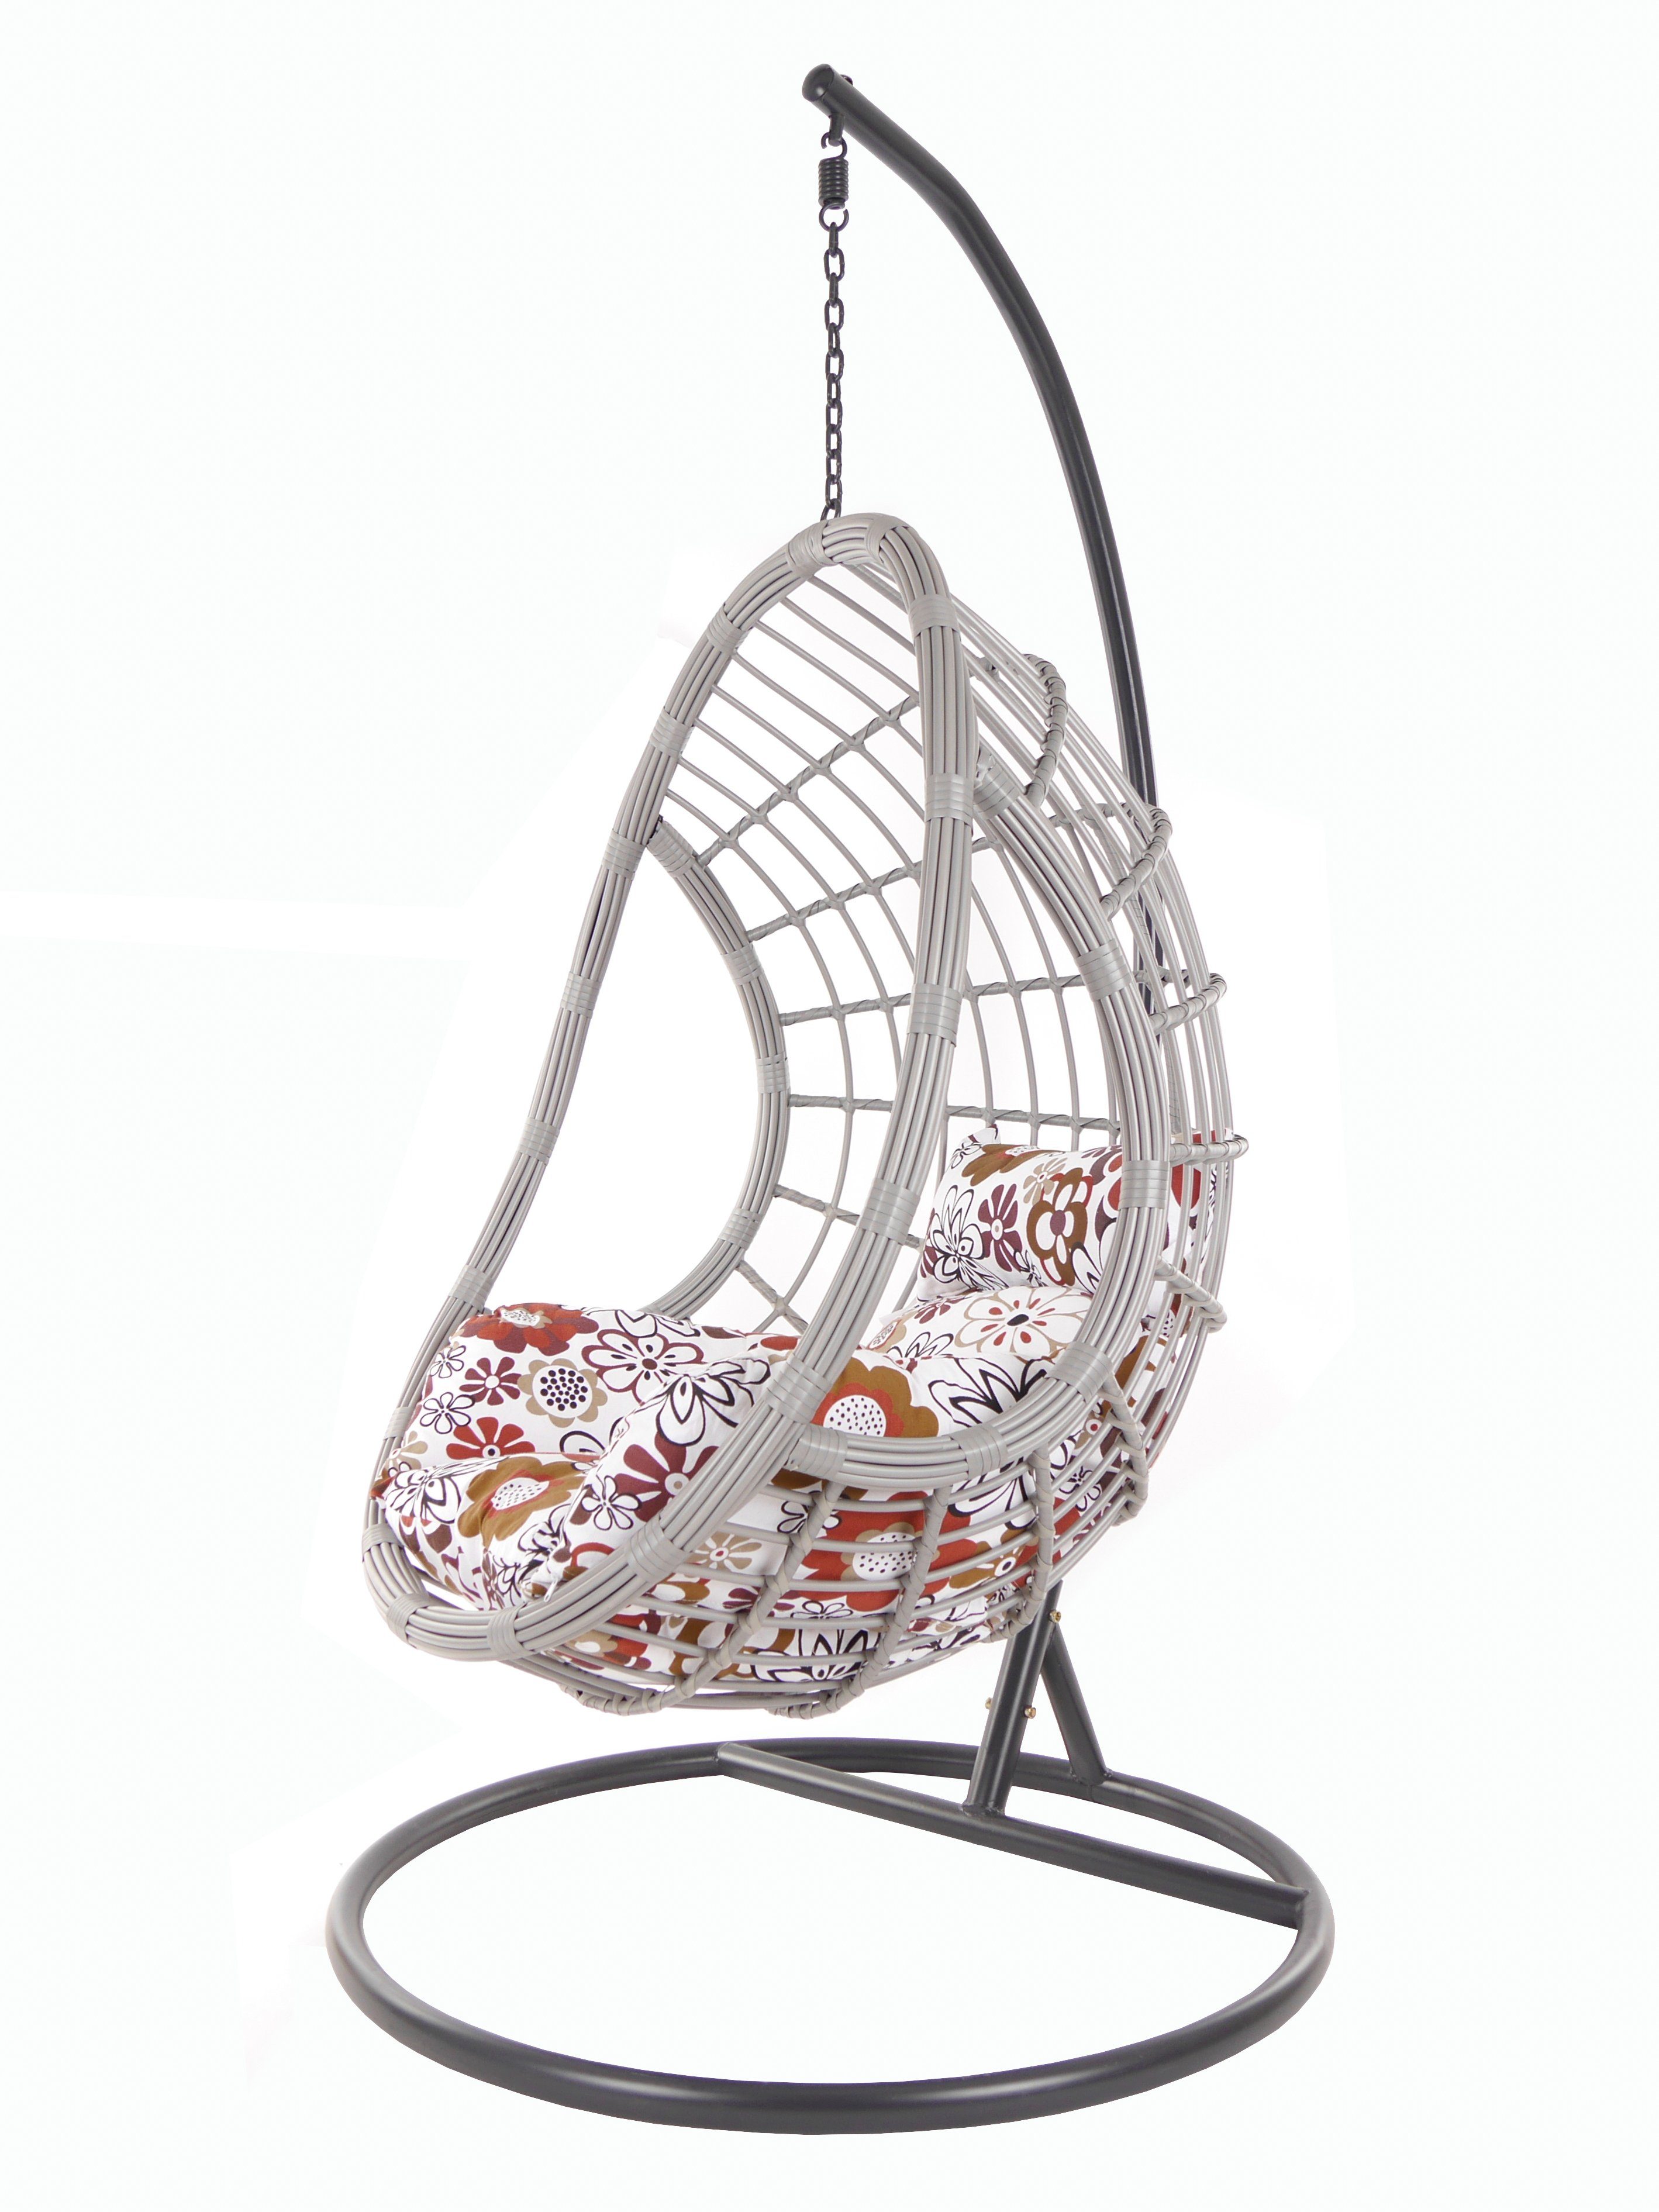 KIDEO Hängesessel PALMANOVA lightgrey, Kissen Swing flowers) Loungemöbel, retro (3762 blumenmuster mit Gestell Hängesessel und retro Chair